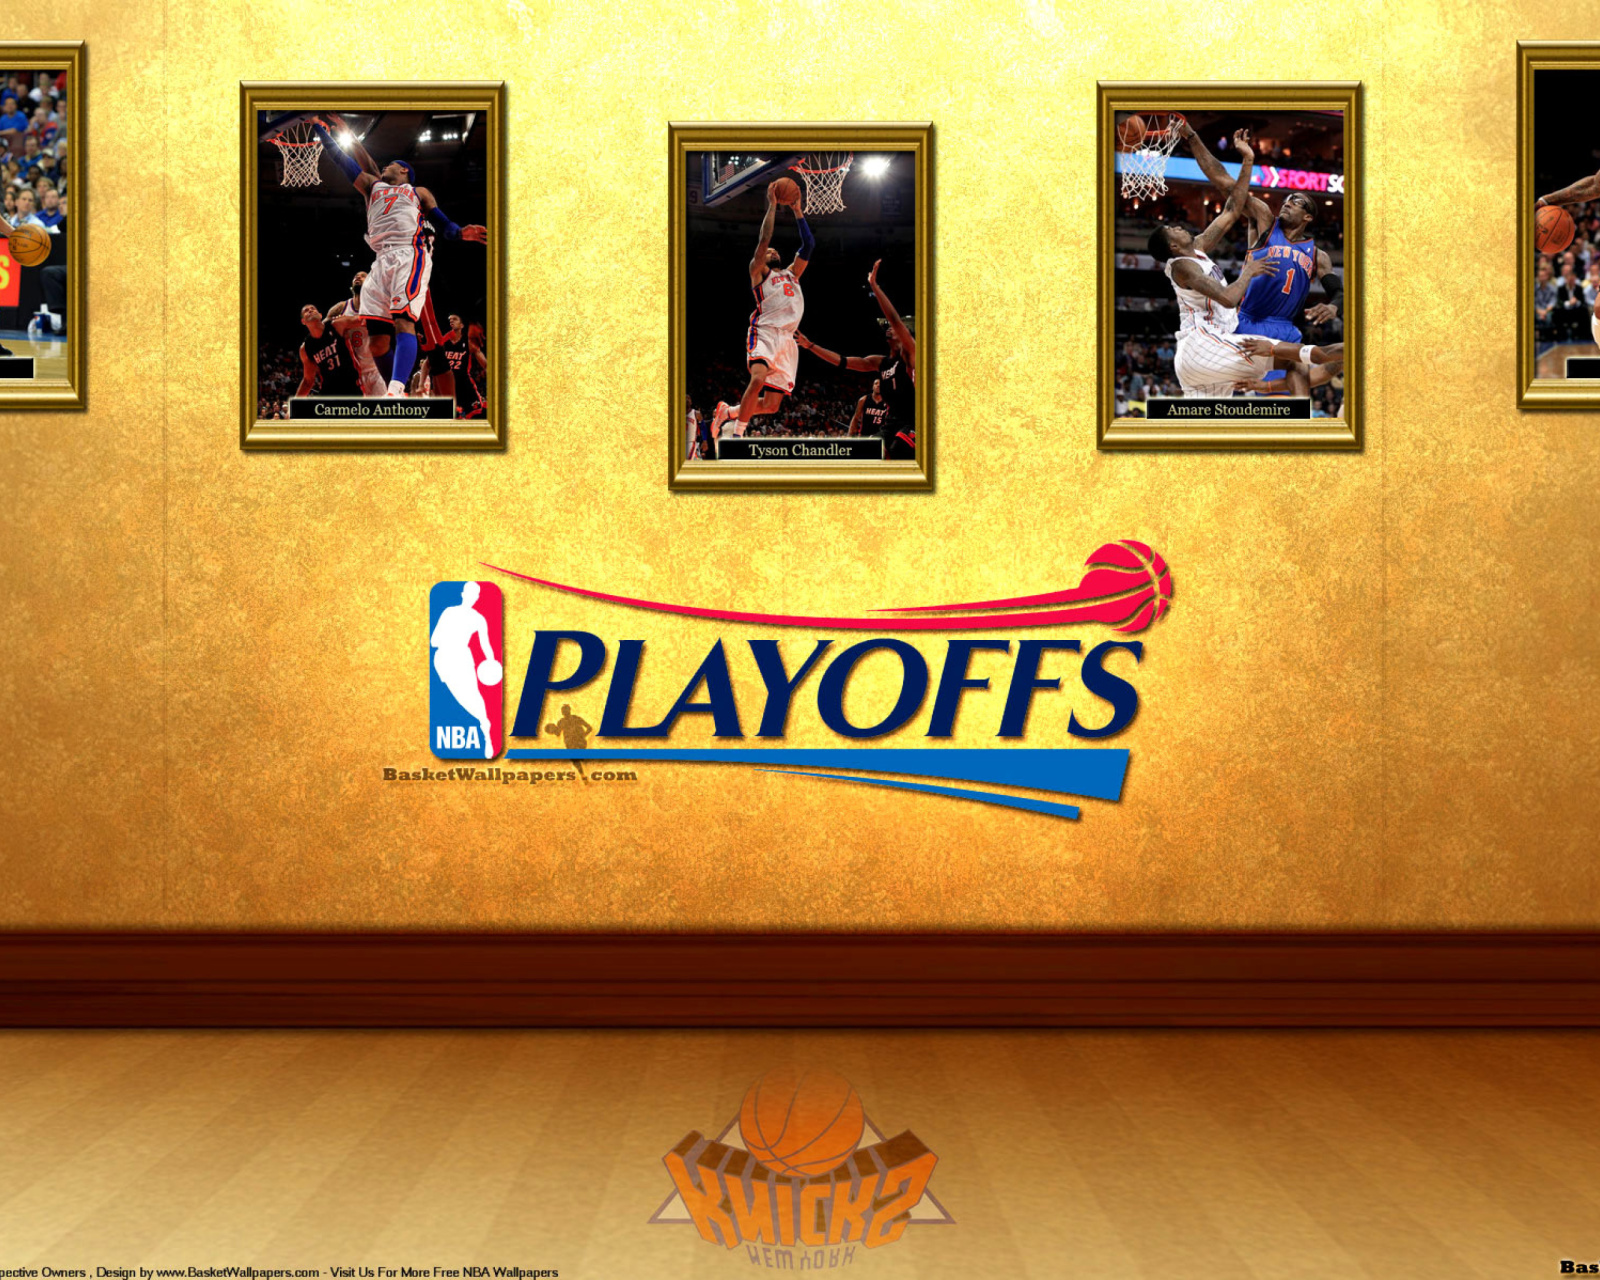 Das New York Knicks NBA Playoffs Wallpaper 1600x1280